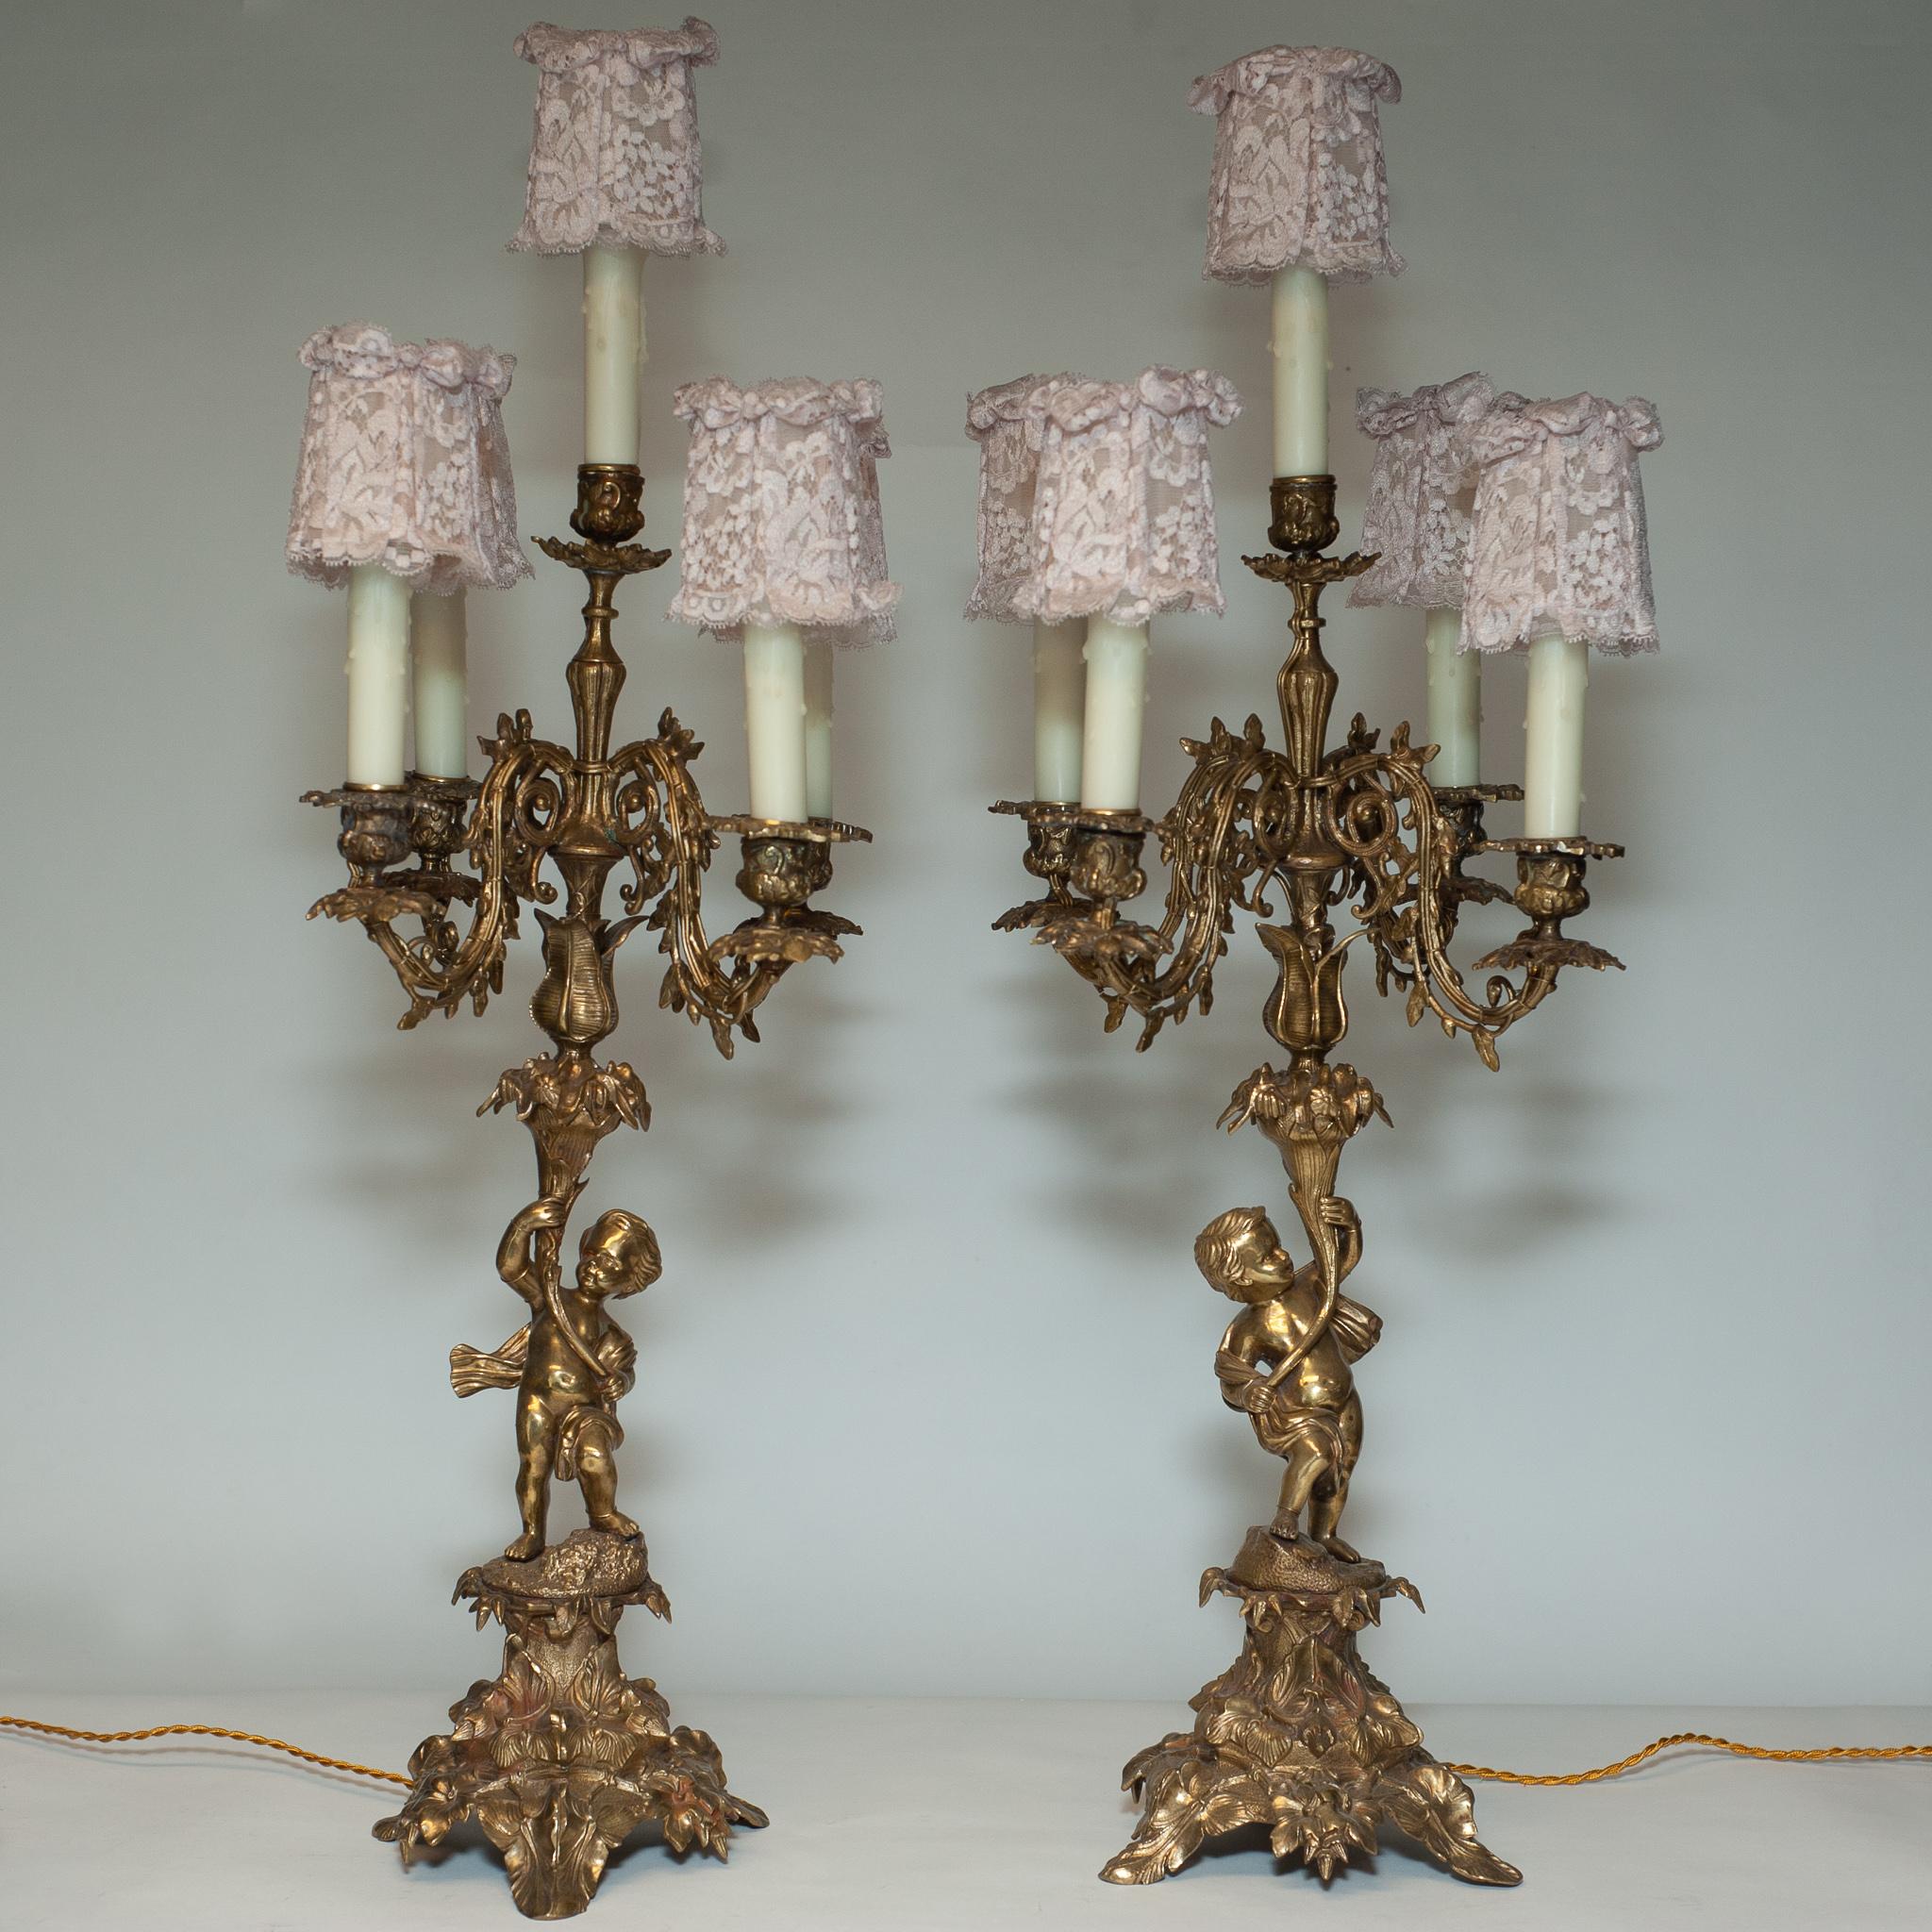 Une belle et grande paire de lampes à 5 bougies en bronze ancien, avec des abat-jours en soie rose faits à la main. Nouvellement recâblé.